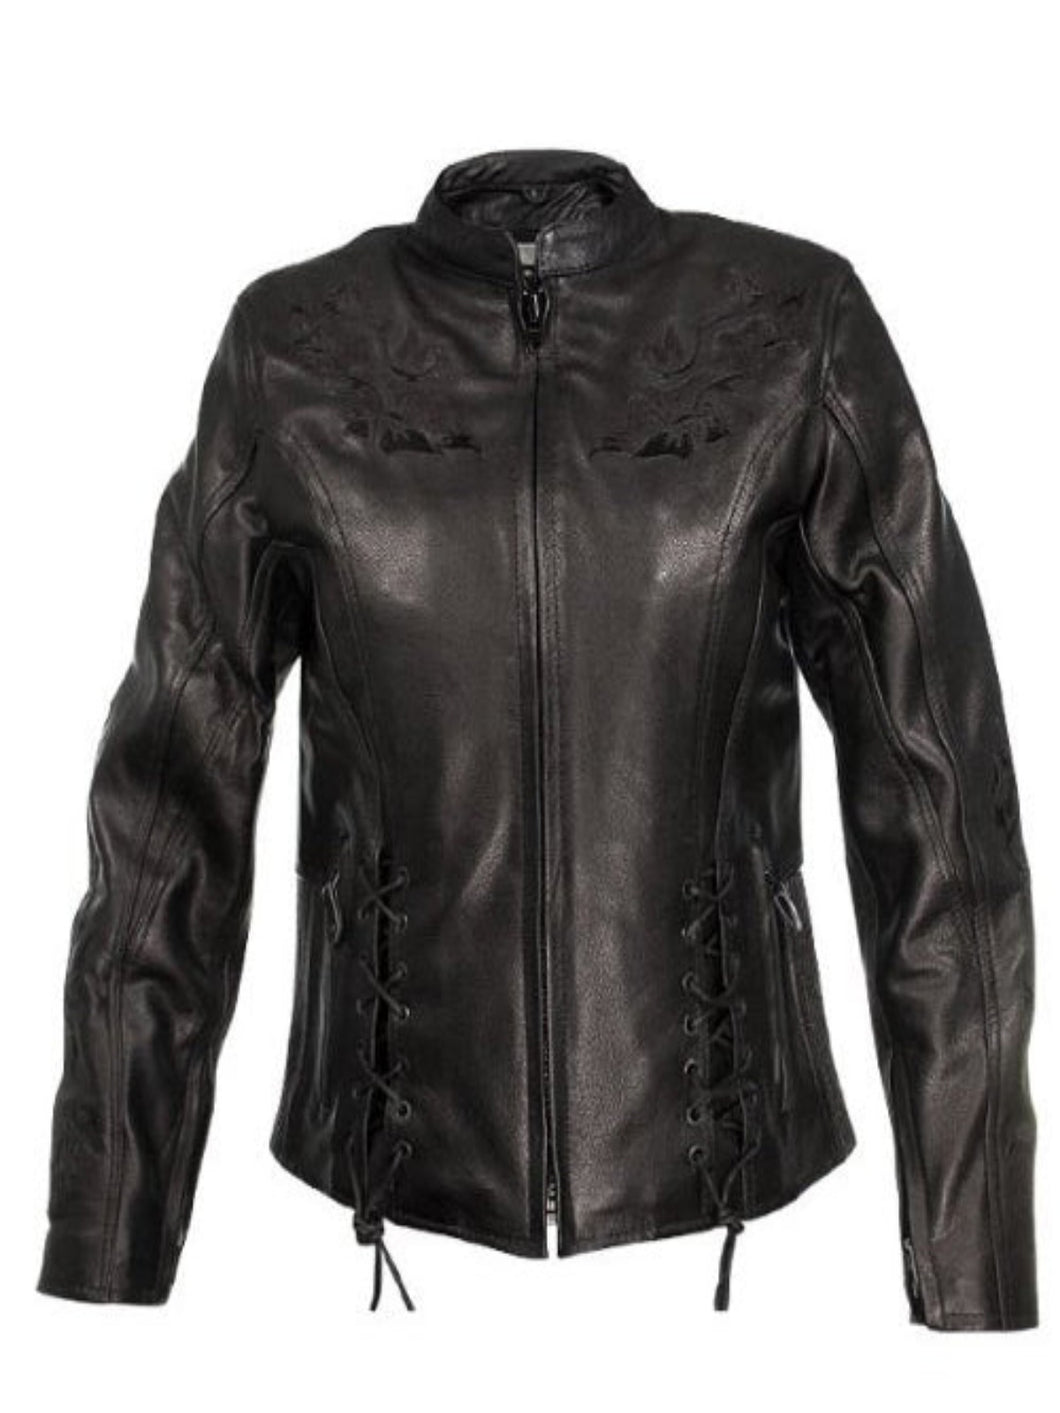 Womens Desptert Designer Black leather Biker Jacket